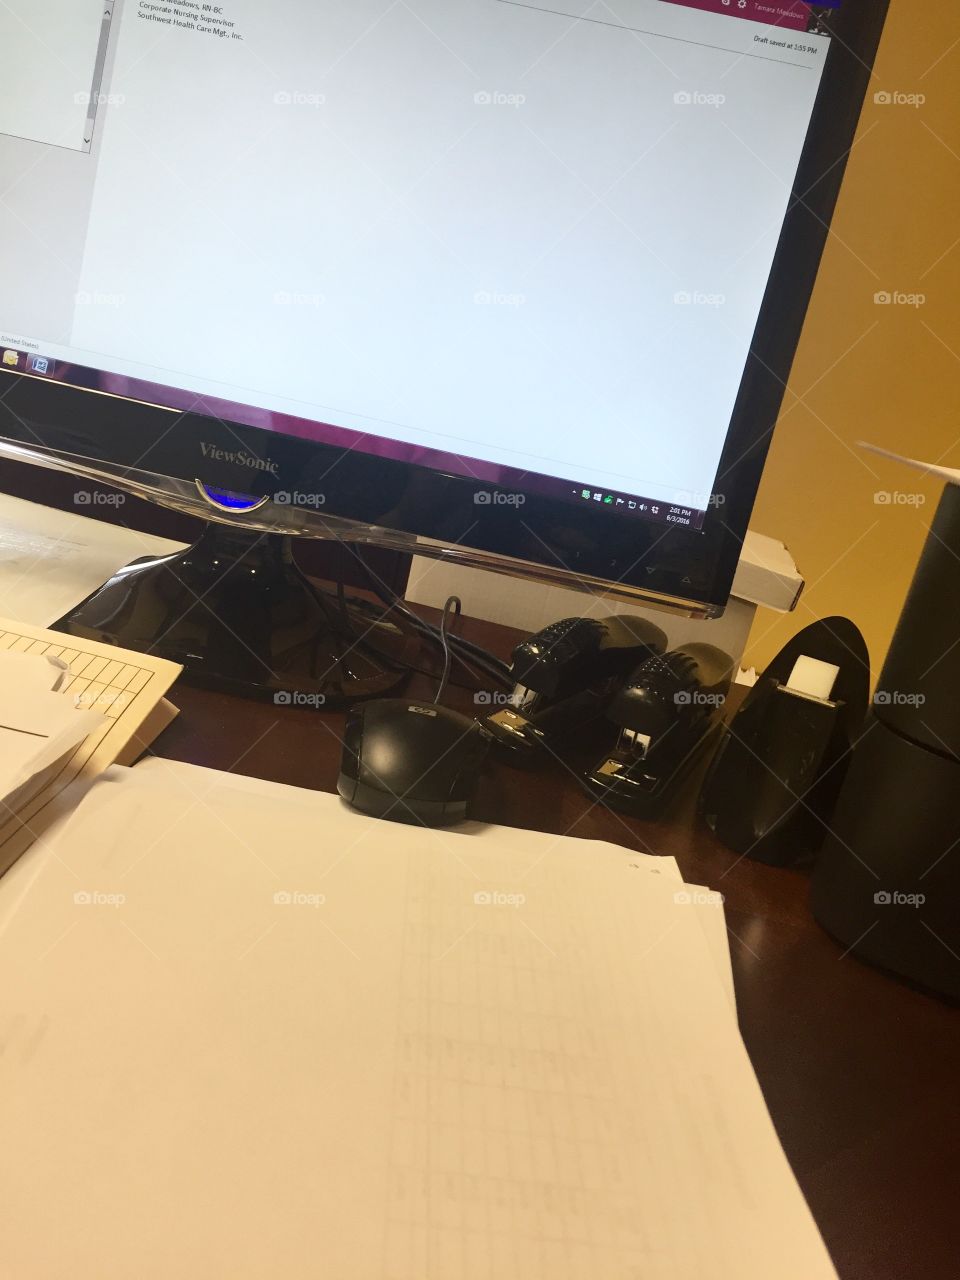 Desk at Work